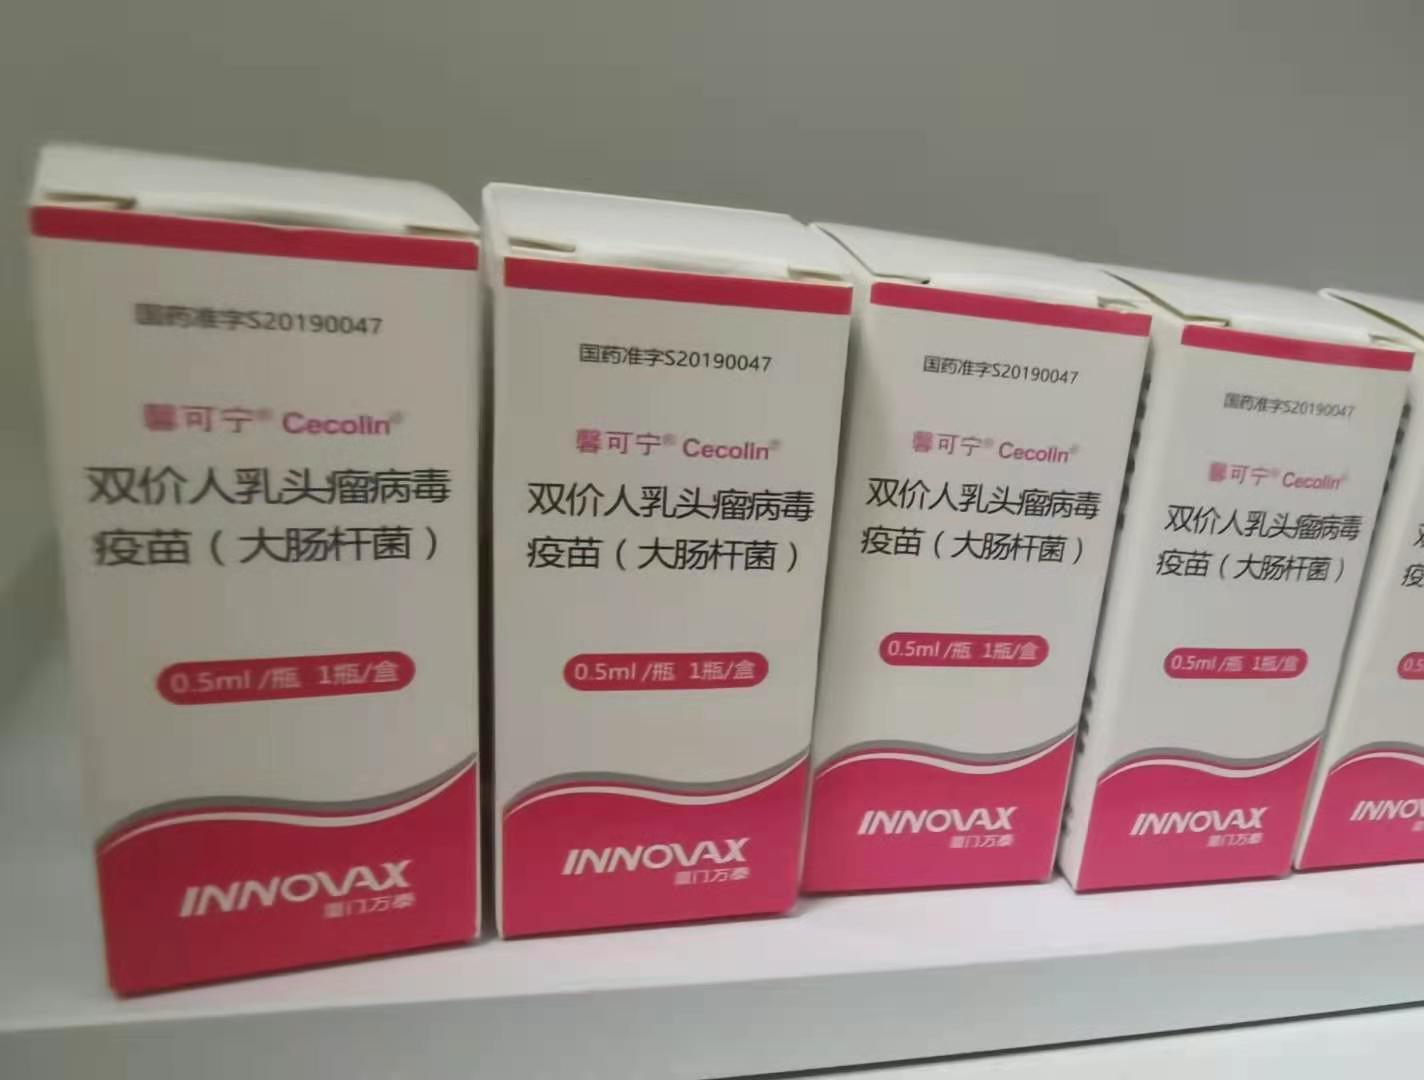 国产宫颈癌疫苗"馨可宁"落地北京 妇科医生成首位接种